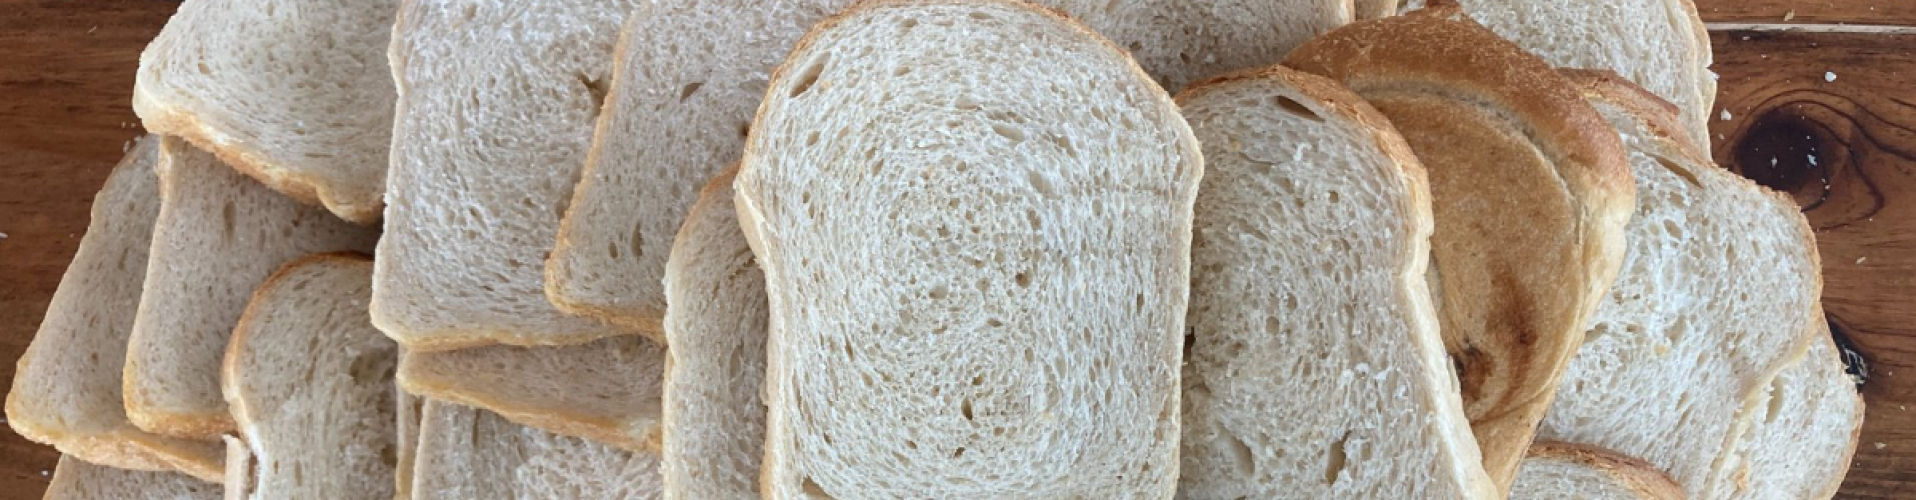 Luchtig Witbrood recept Marije Bakt Brood stapel witte boterhammen